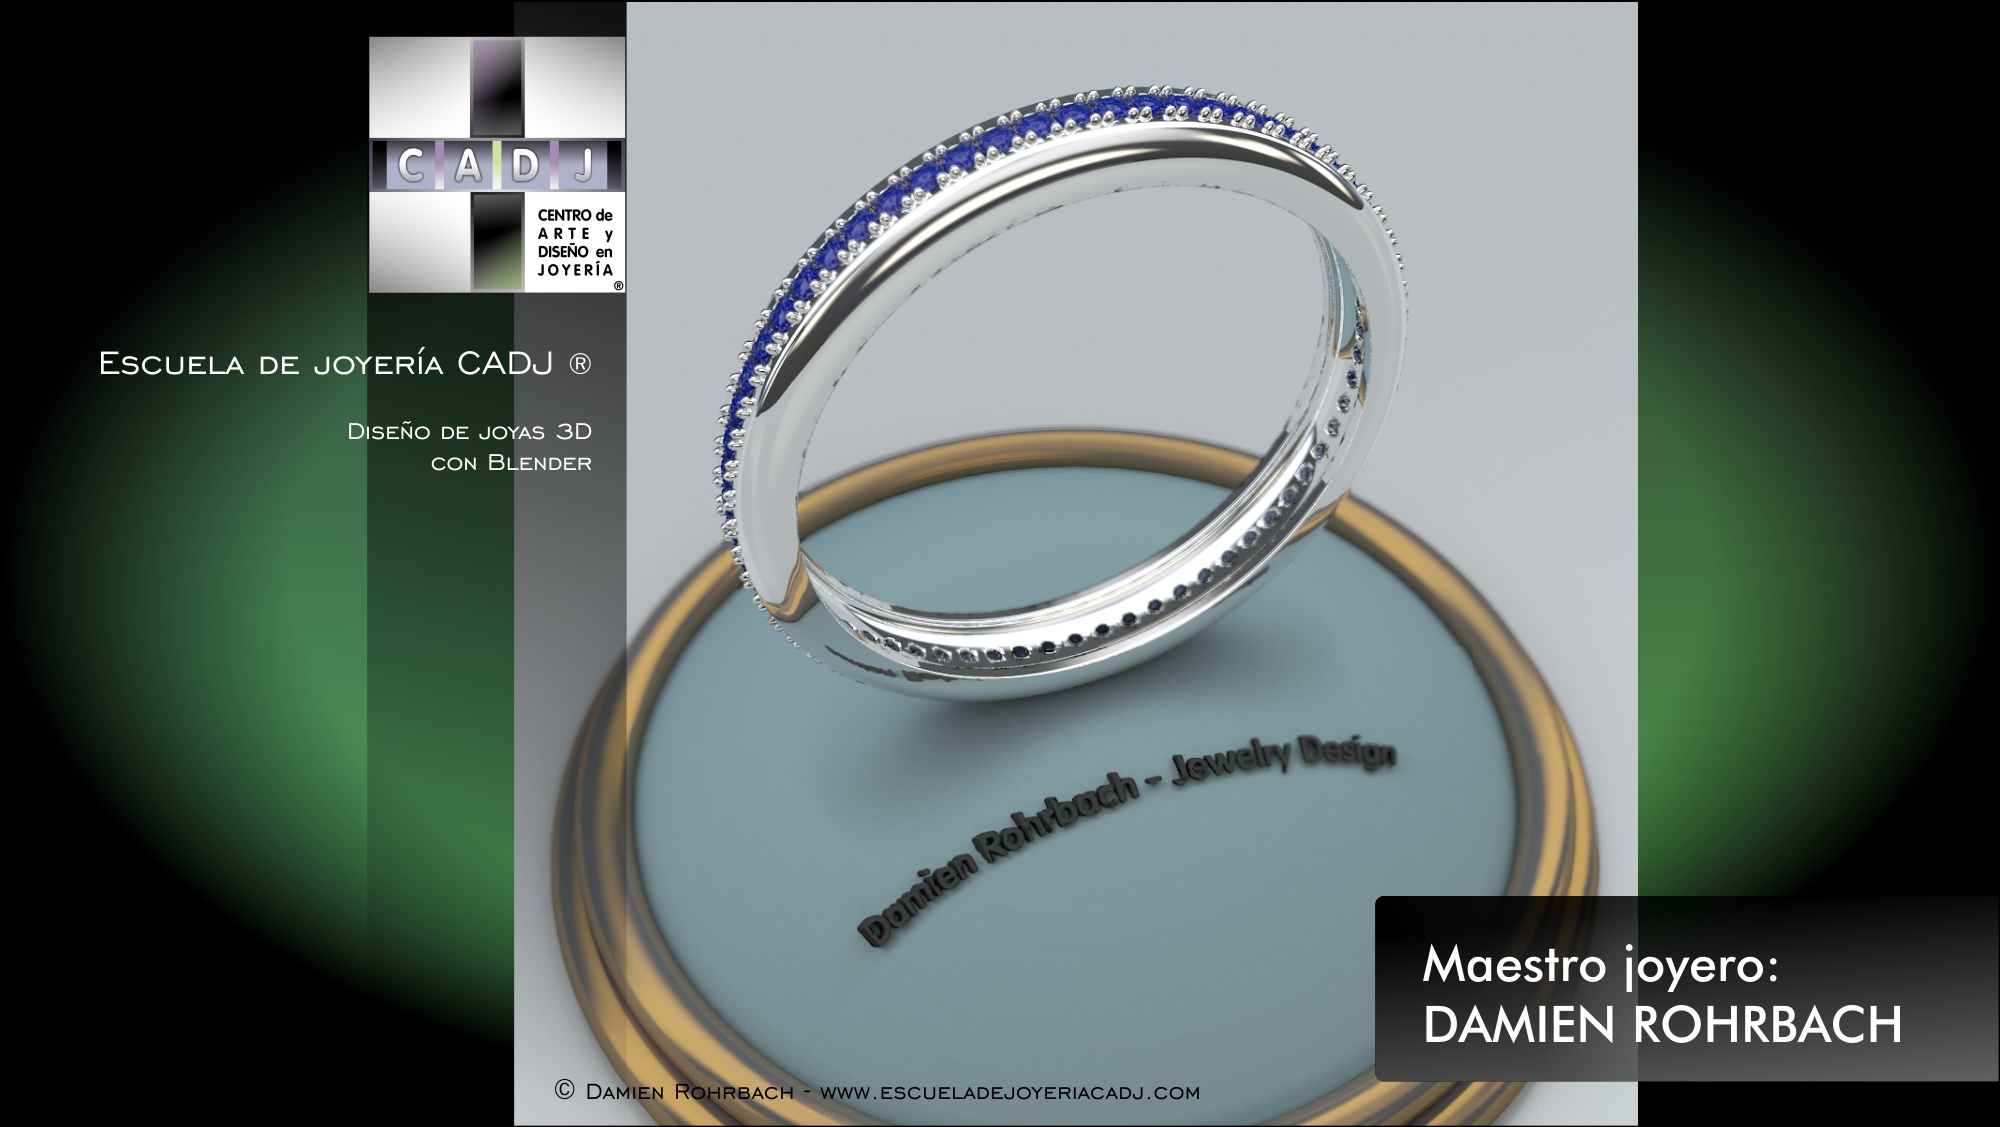 Anillo de oro blanco con zafiros, diseño de joyas 3D, modelado y renderizado con BLENDER, Damien Rohrbach, maestro joyero Escuela de joyería CADJ ®